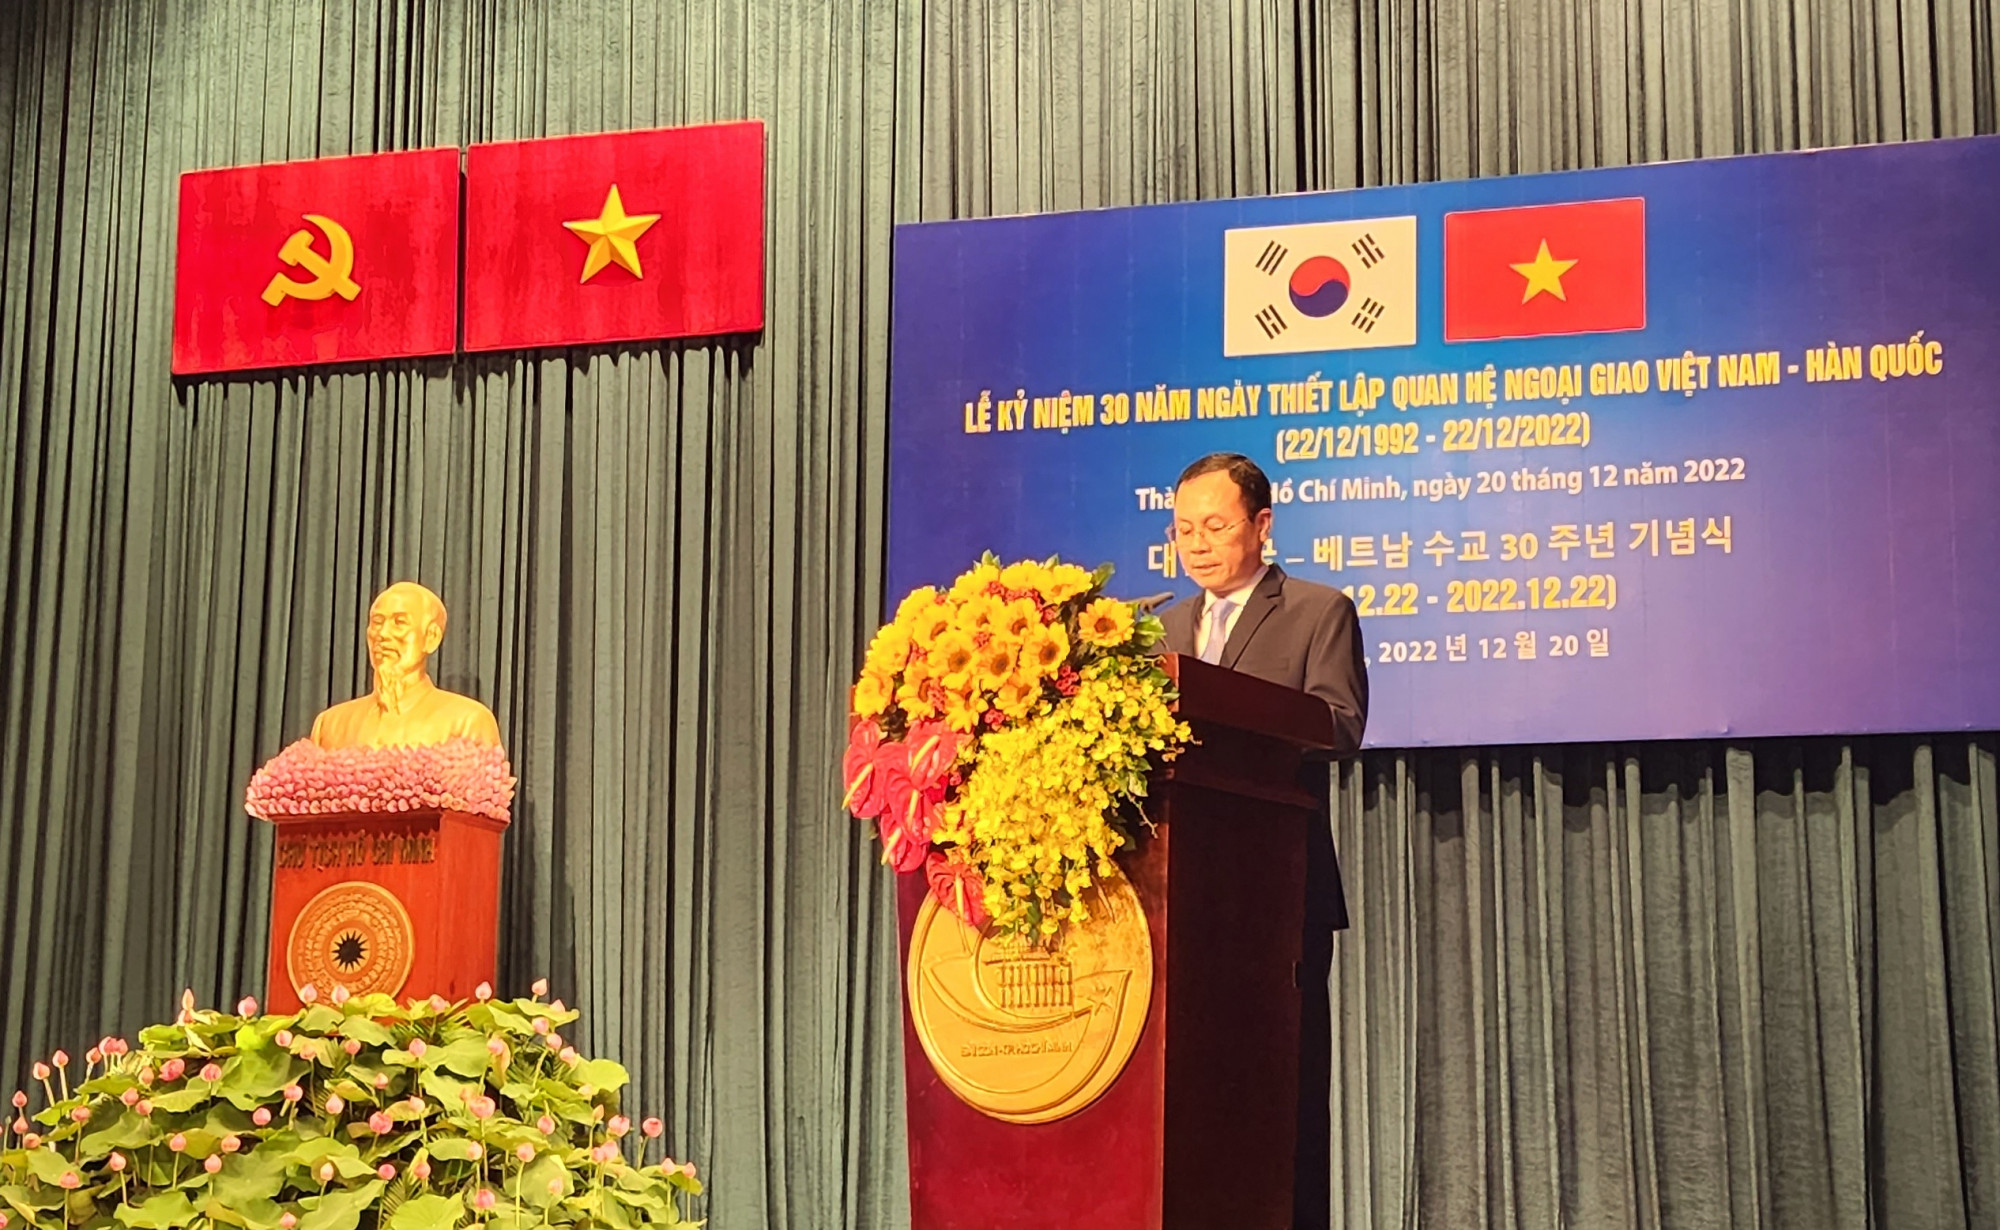 Ông Nguyễn Văn Hiếu - Ủy viên dự khuyết Trung ương Đảng, Phó Bí thư Thành ủy TP HCM phát biểu tại lễ kỷ niệm